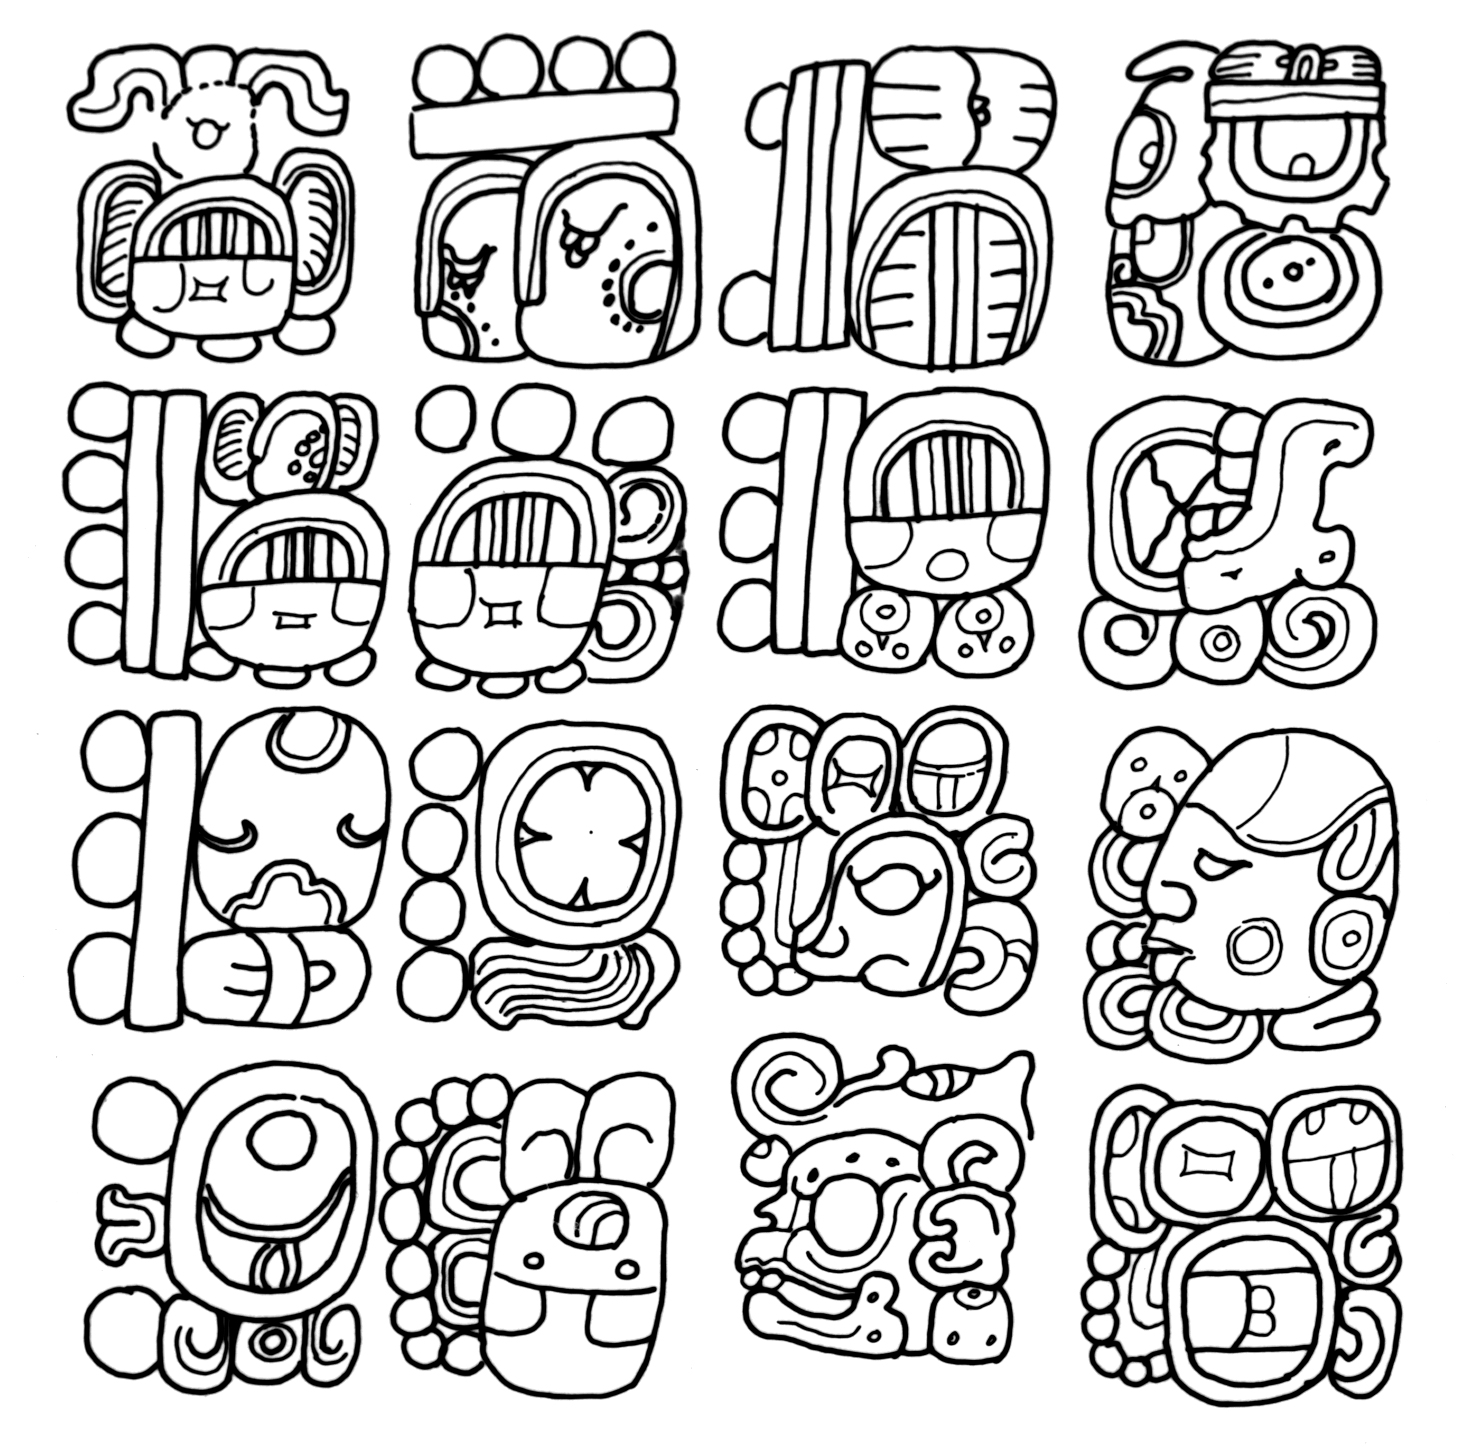 Mayan Drawings at Explore collection of Mayan Drawings